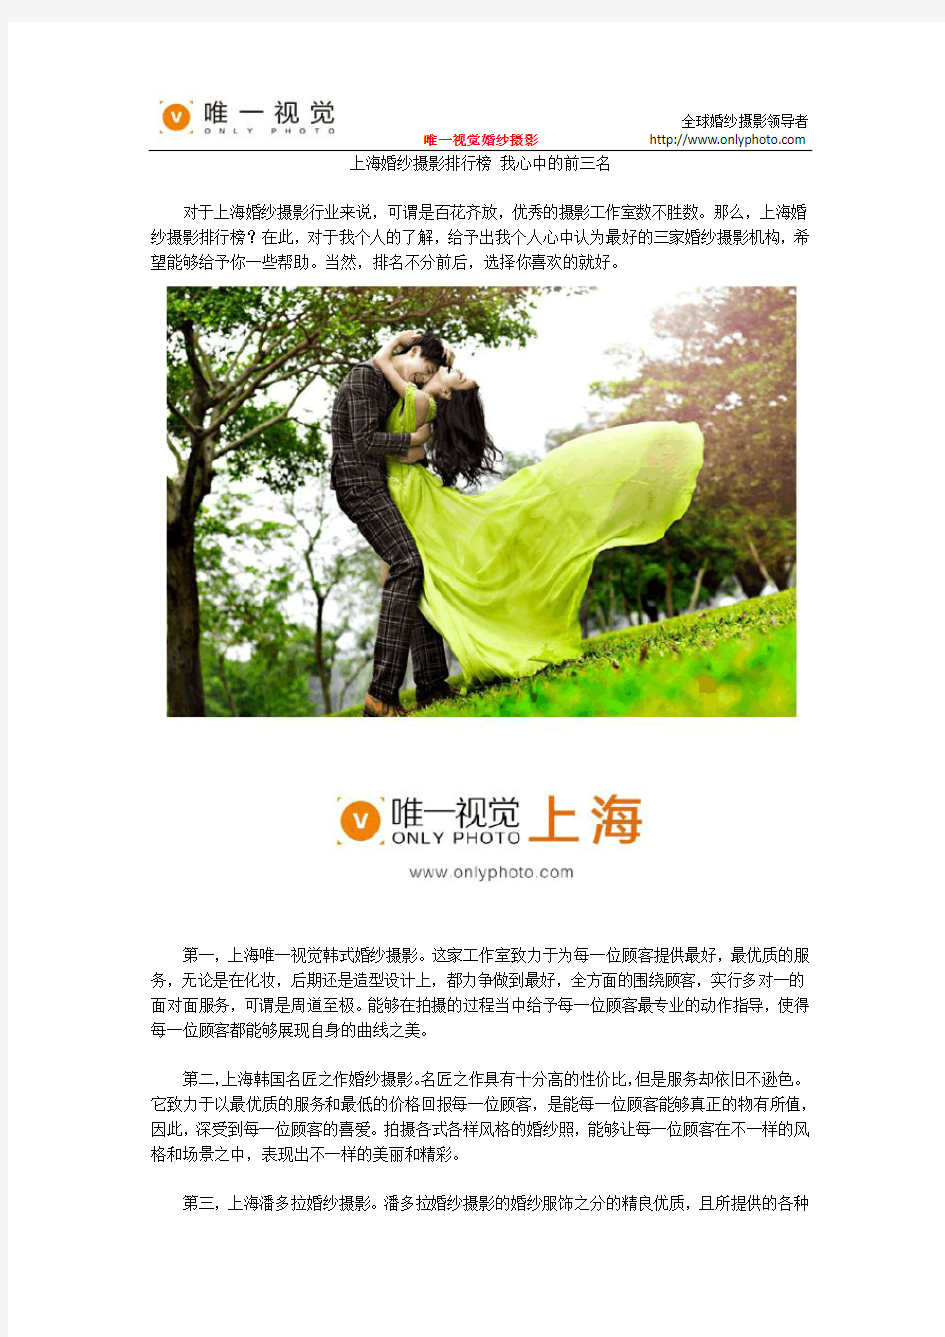 上海婚纱摄影排行榜 我心中的前三名